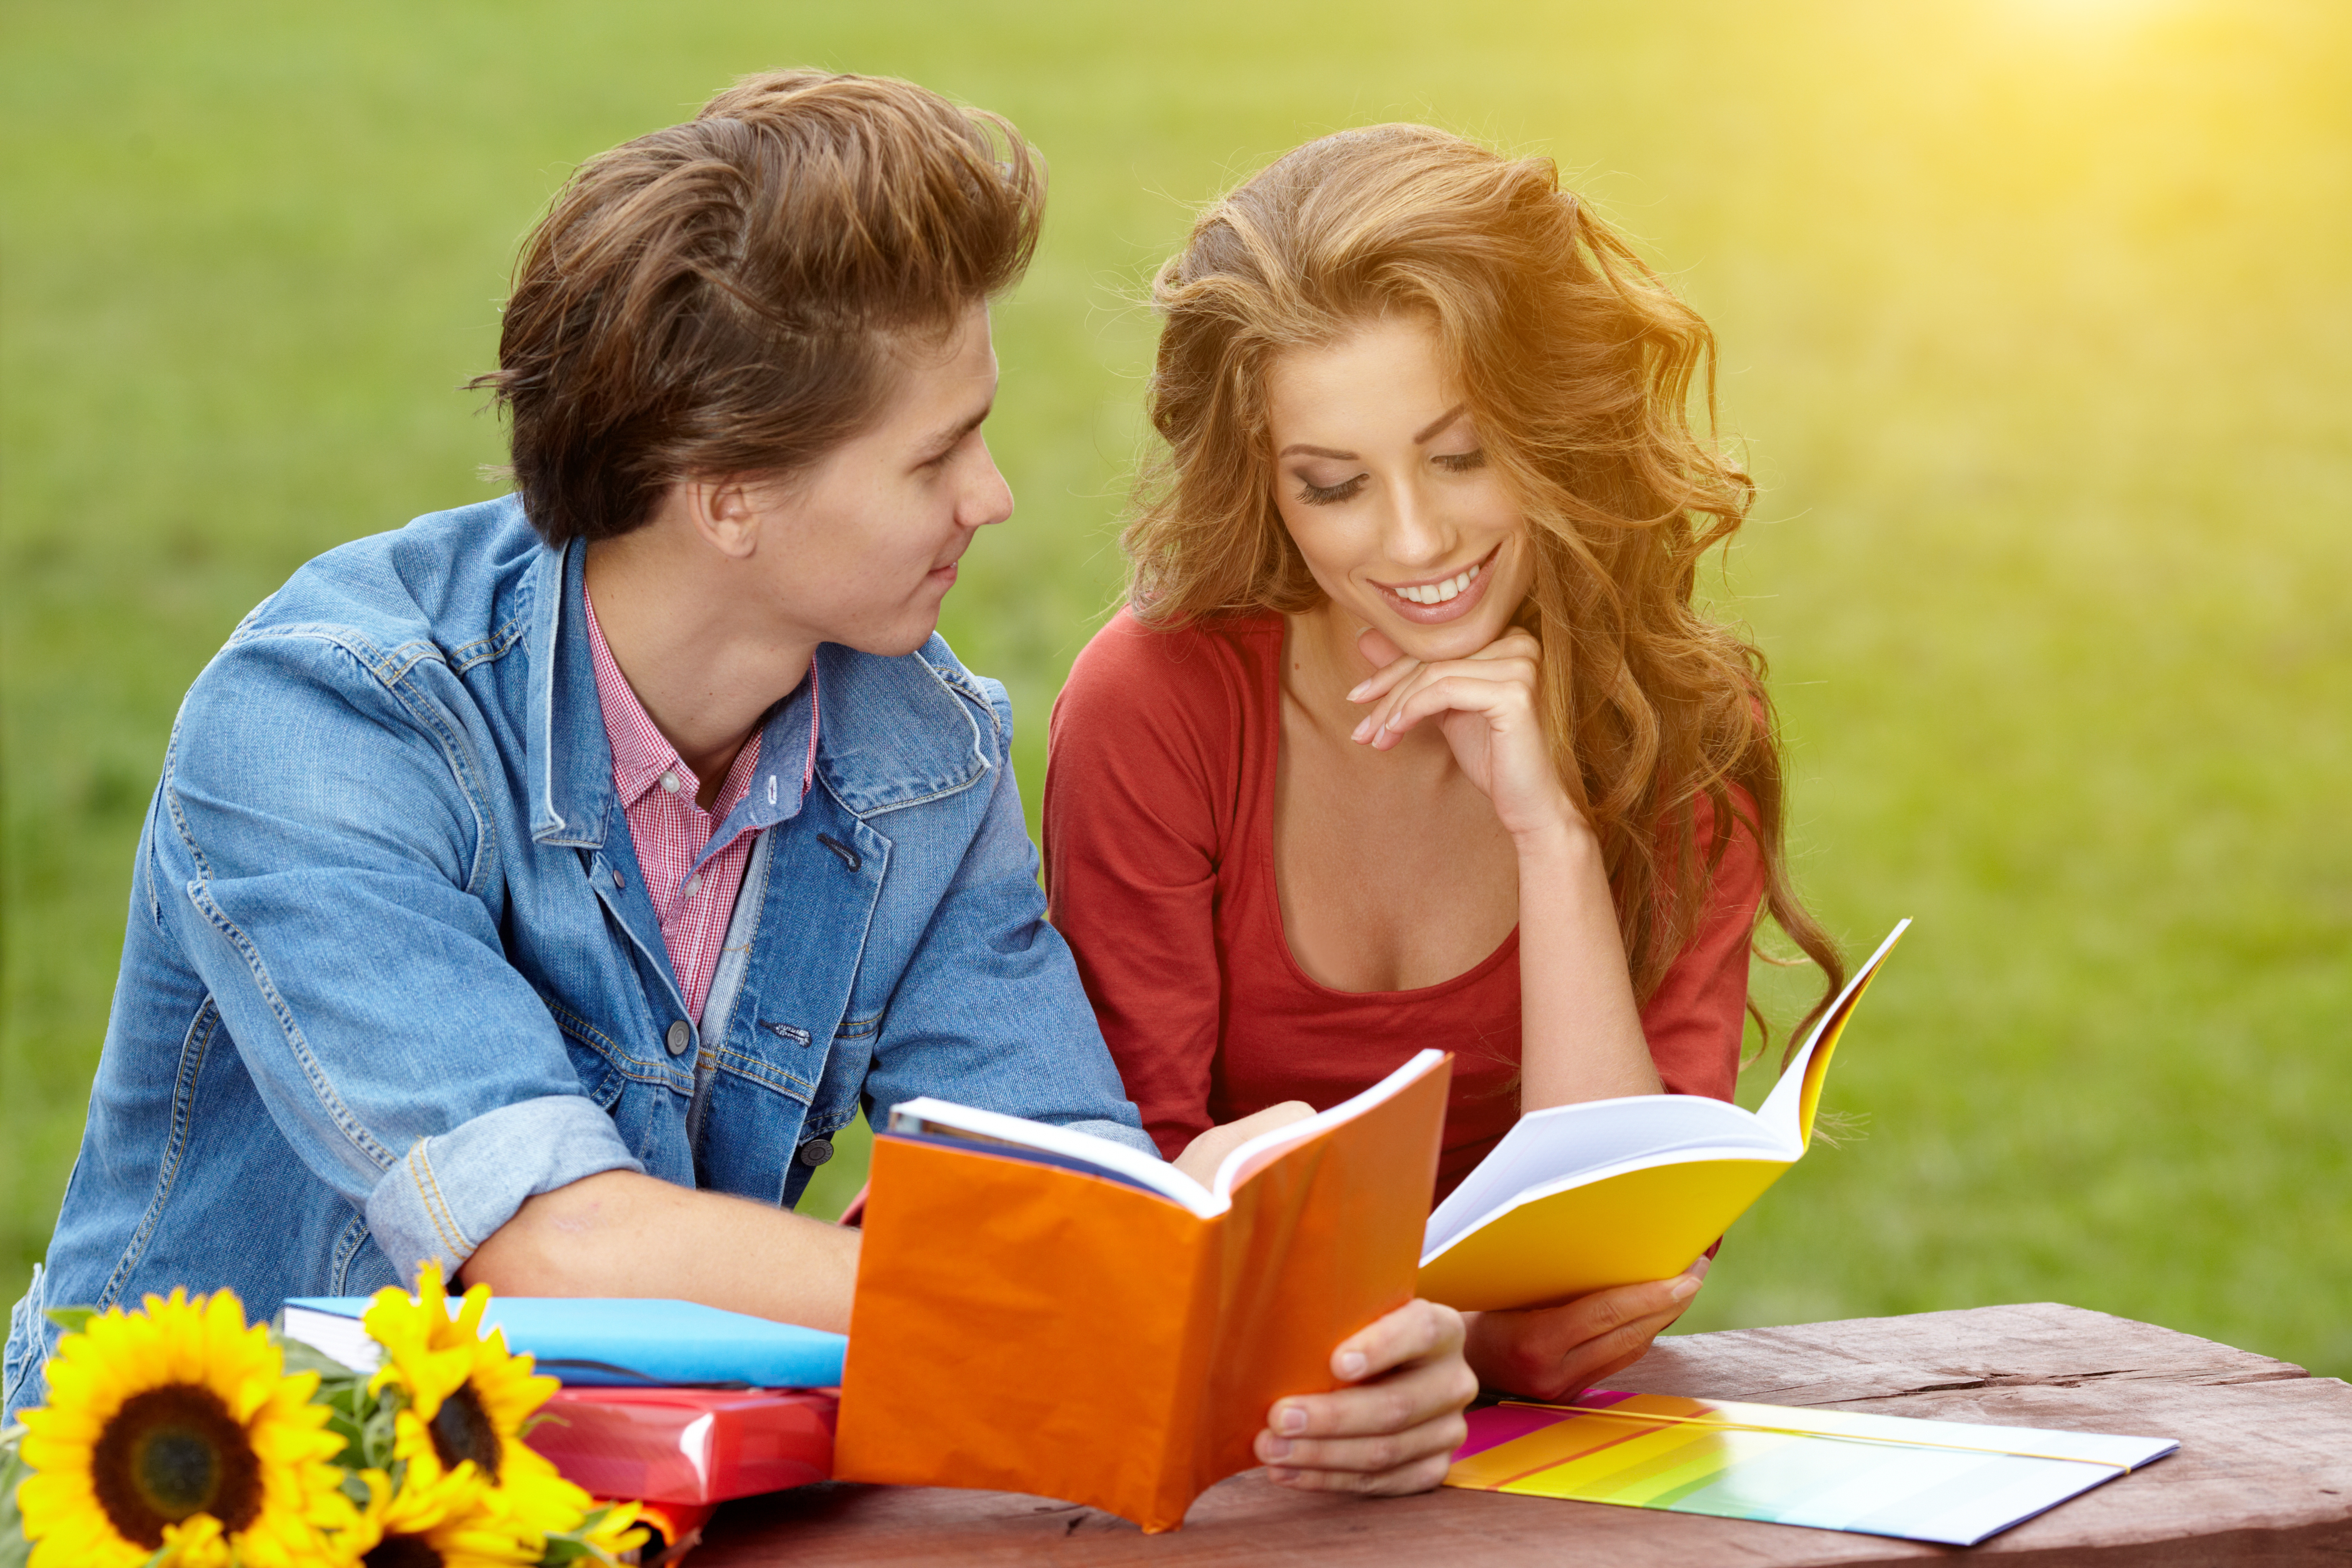 Читатели рекомендуют. Общение людей. Чтение книг. Молодежь и чтение. Радость общения.